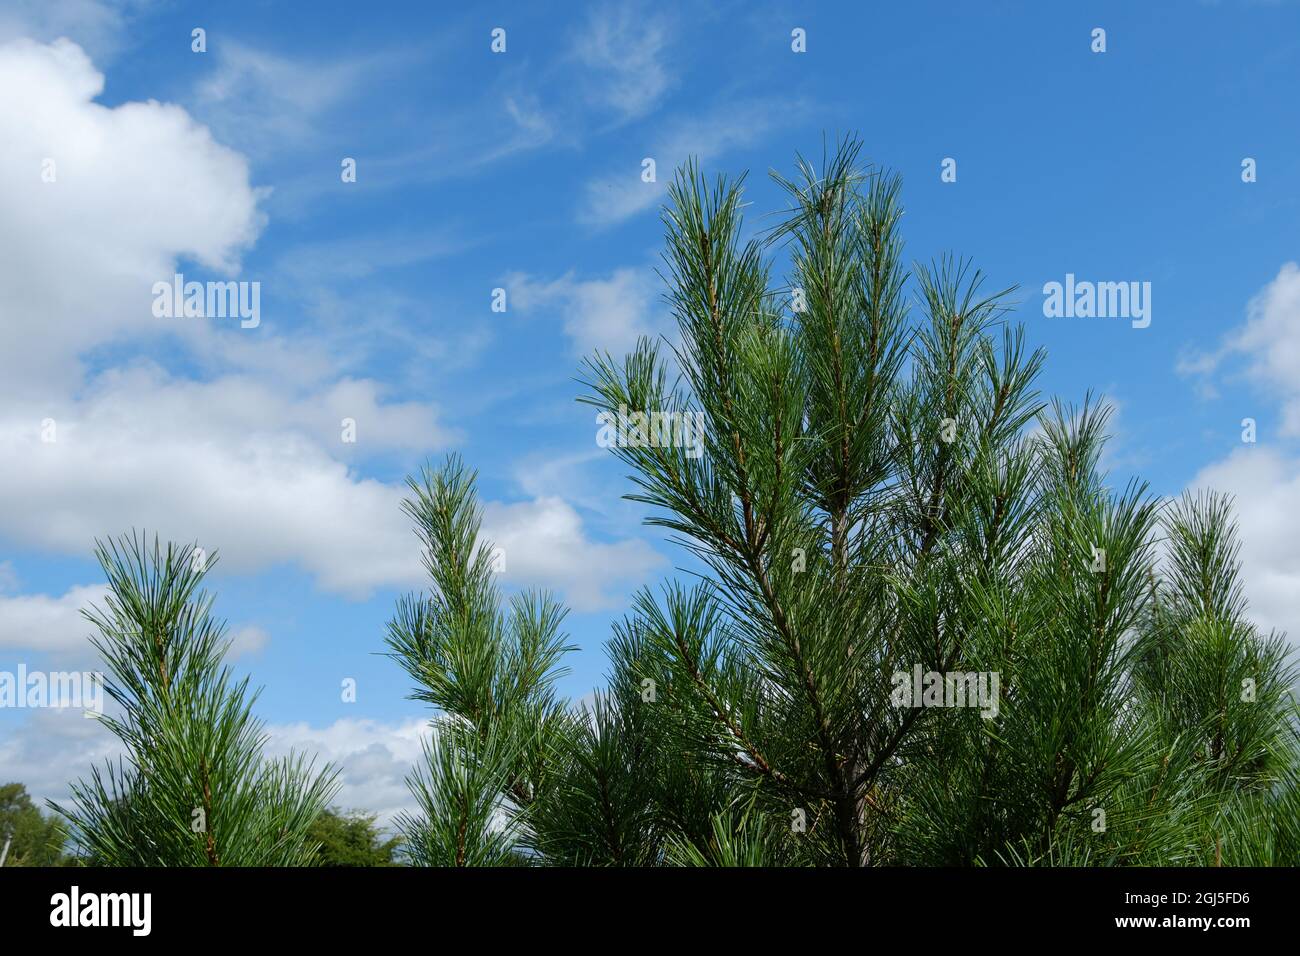 Die grüne, saftige Spitze einer jungen sibirischen Zeder vor dem Hintergrund eines blauen Himmels mit Wolken. Selektiver Fokus. Stockfoto